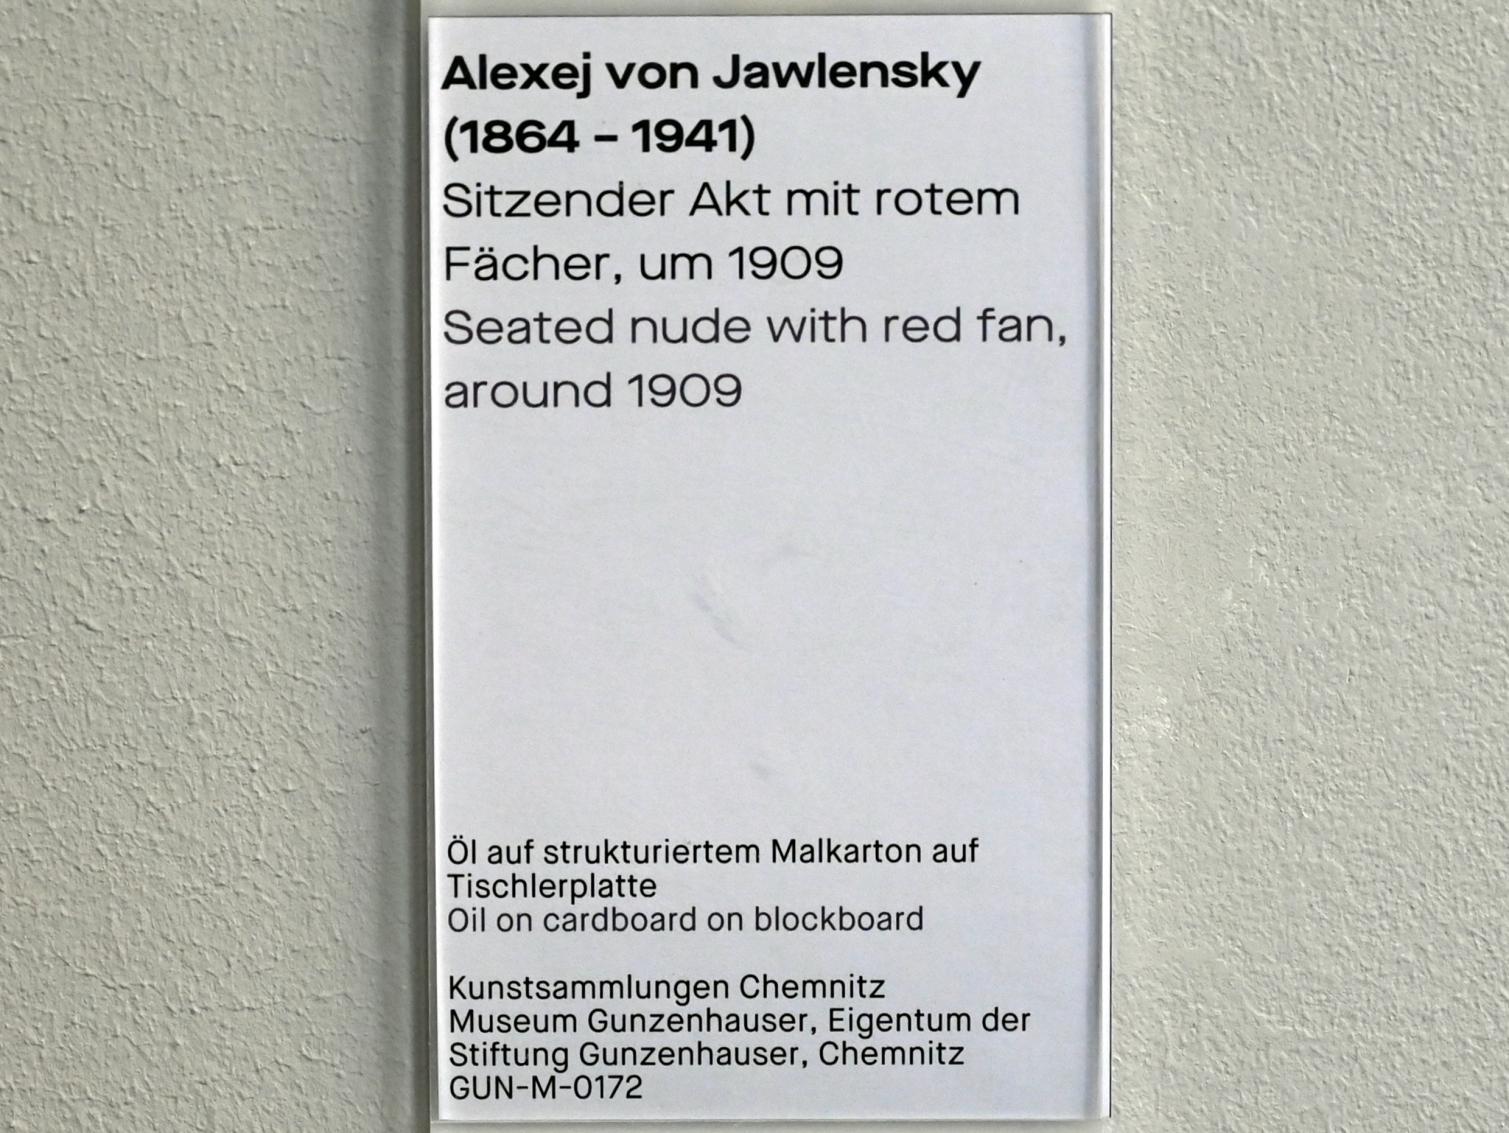 Alexej von Jawlensky (1893–1938), Sitzender Akt mit rotem Fächer, Chemnitz, Museum Gunzenhauser, Saal 3.6 - Der blaue Reiter, um 1909, Bild 2/2